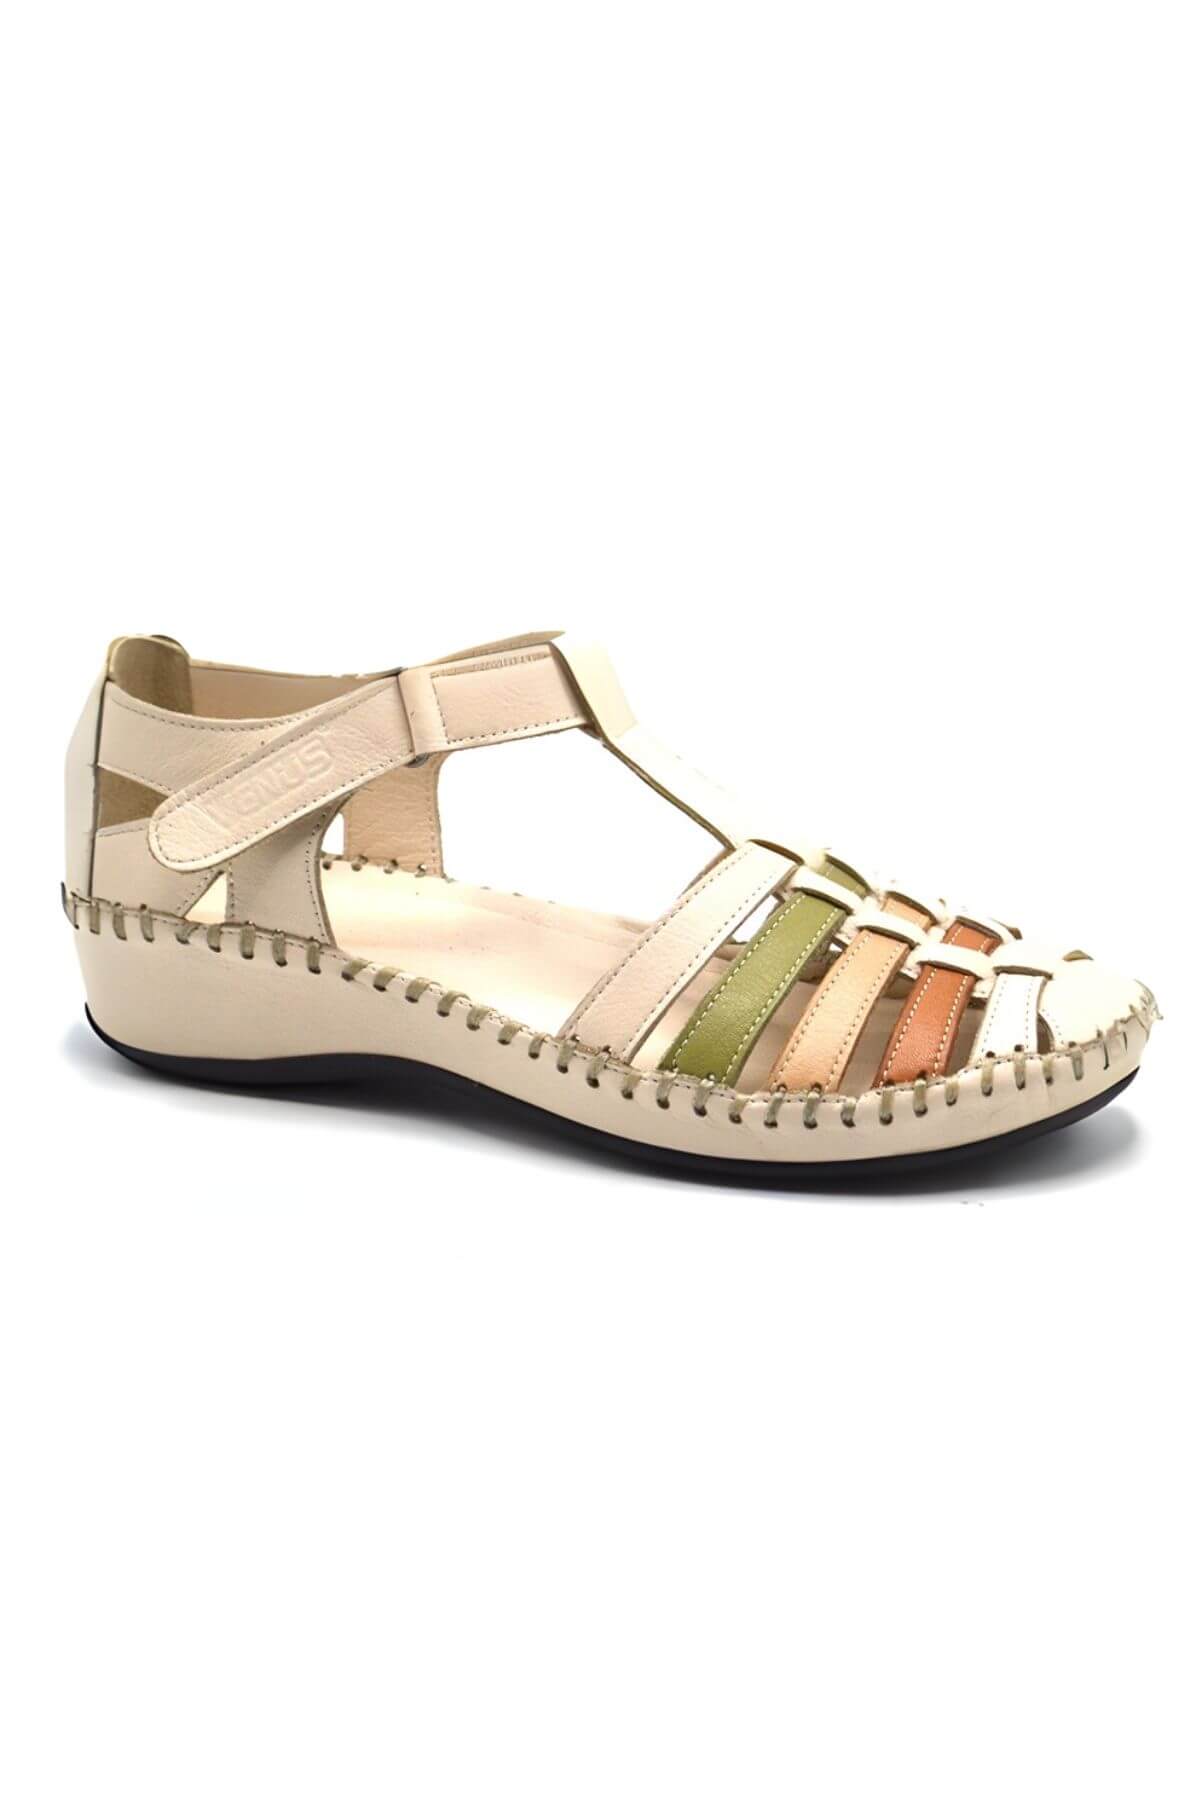 Kadın Comfort Deri Sandalet Bej 23033319Y - Thumbnail